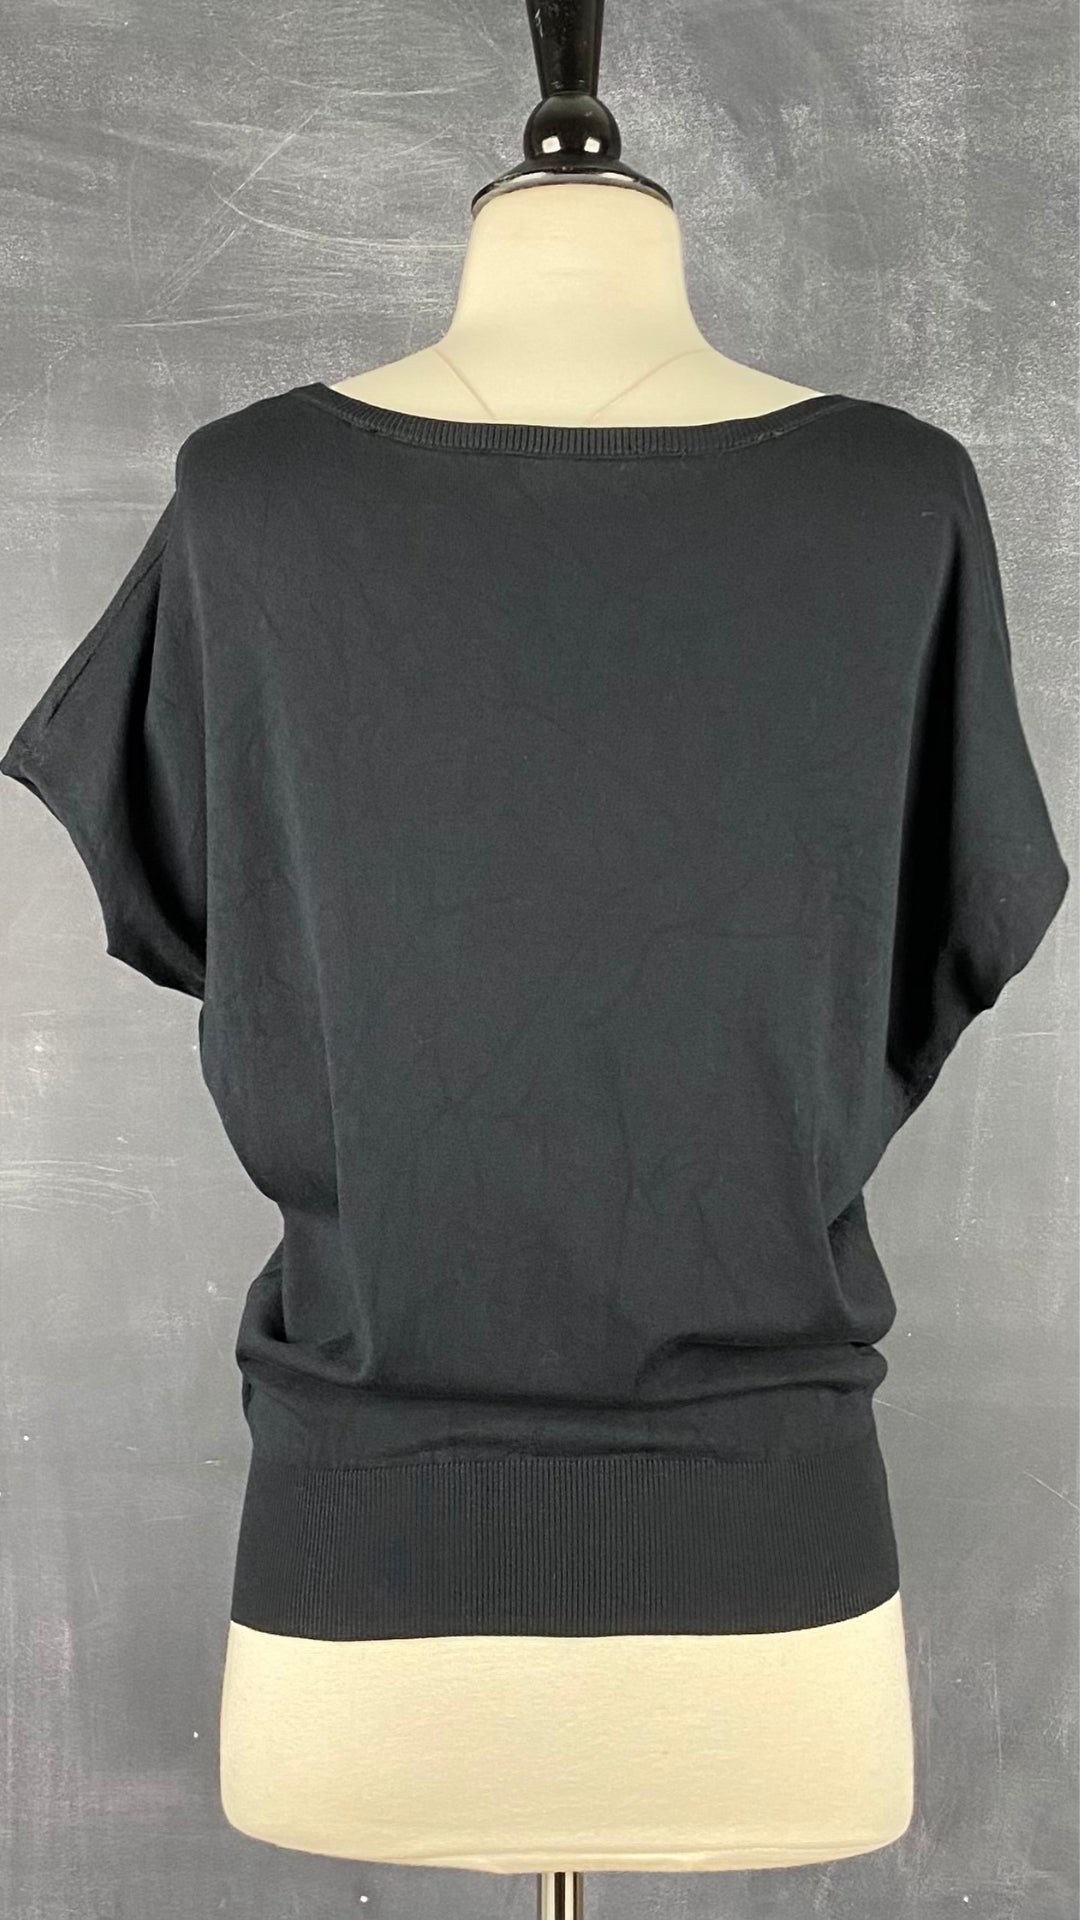 Chandail en tricot noir fin extensible Oui, taille 4 (xs/s). Vue de dos.